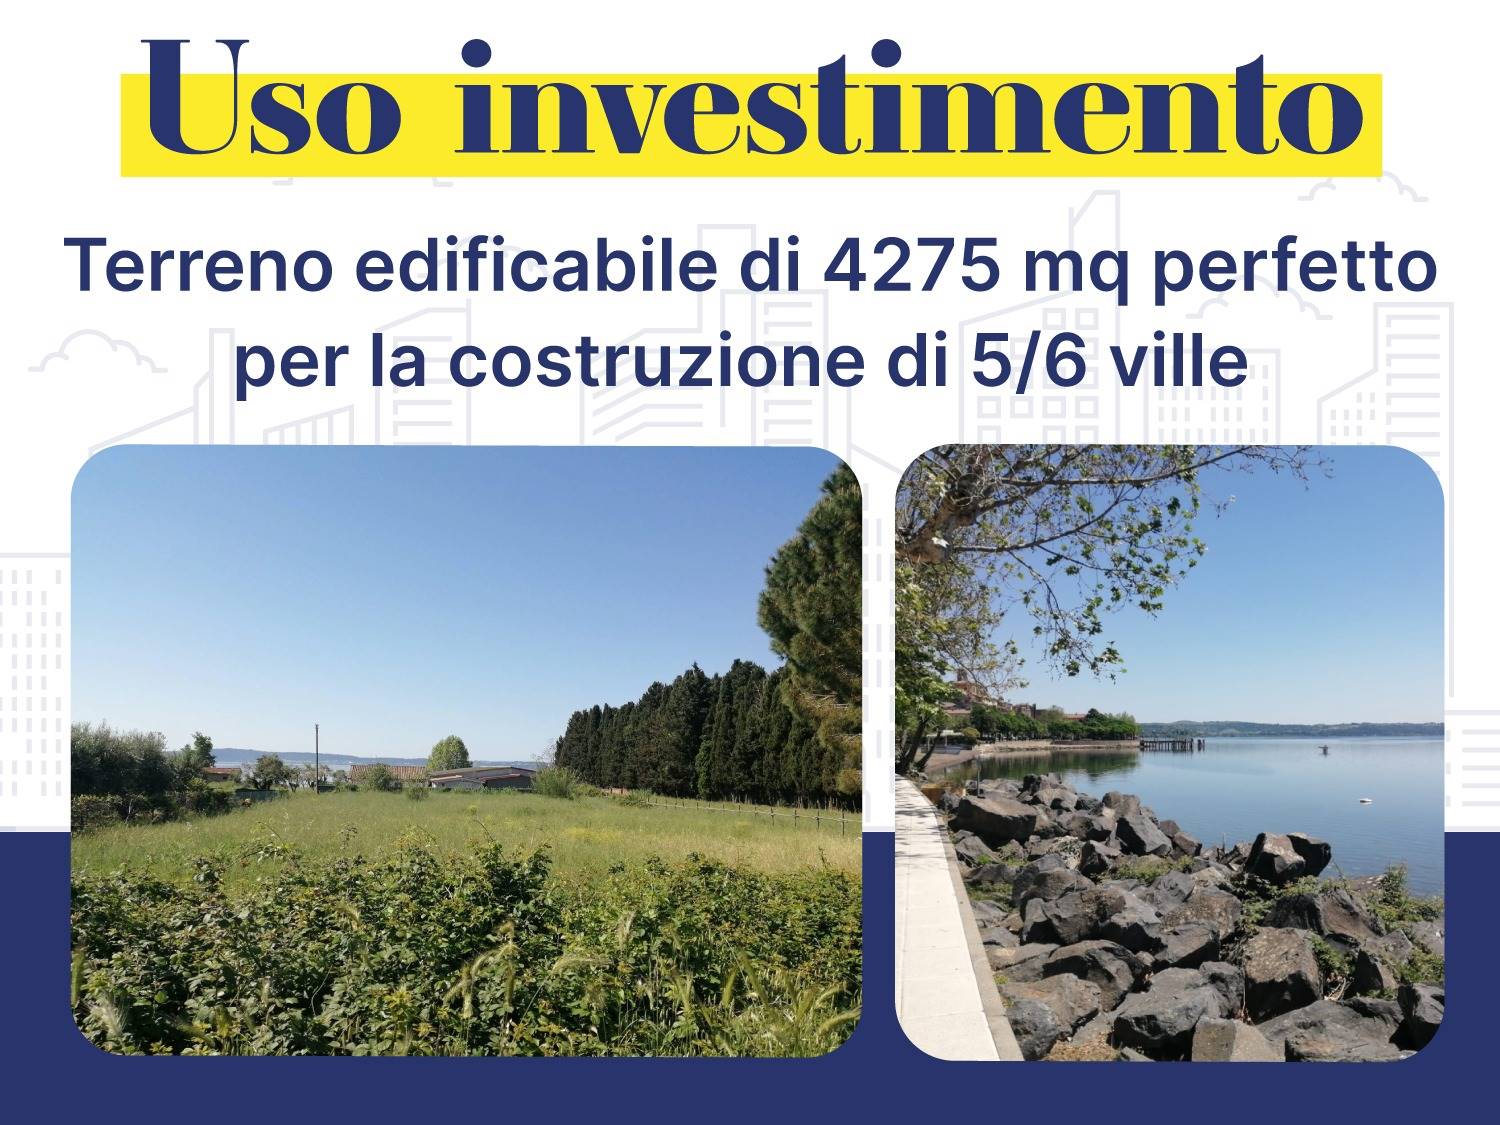 Terreno Edificabile Residenziale in vendita a Trevignano Romano, 9999 locali, prezzo € 600.000 | CambioCasa.it